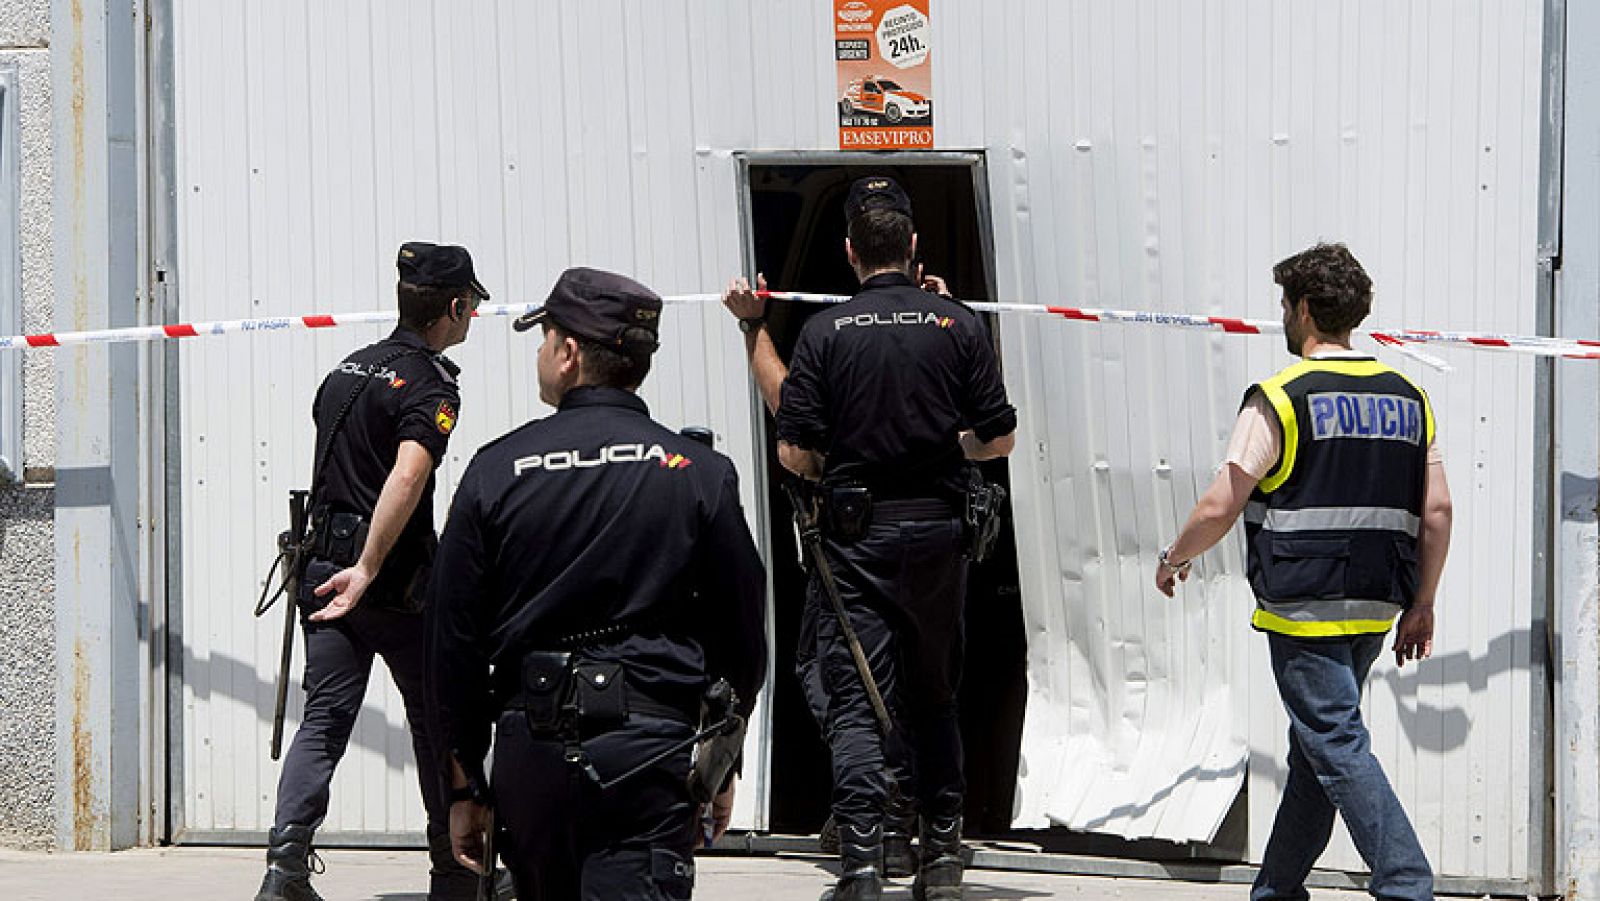 La Policía Nacional se ha incautado en Córdoba de 52 toneladas de hachís, el mayor alijo aprehendido en España hasta la fecha y posiblemente el mayor de Europa, en una operación que aún continúa abierta.